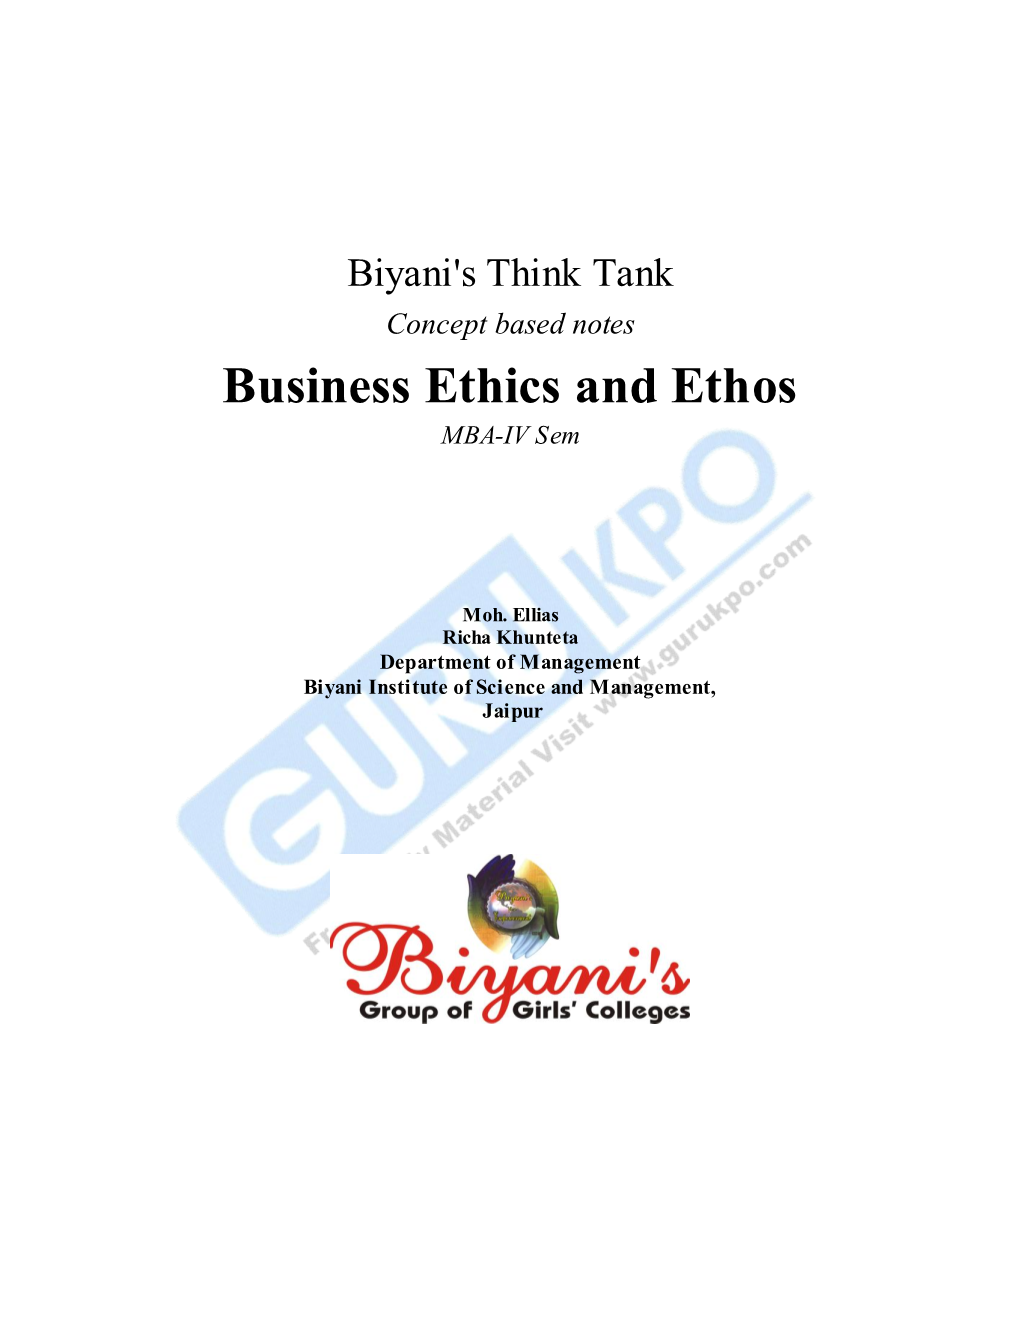 Business Ethics and Ethos MBA-IV Sem